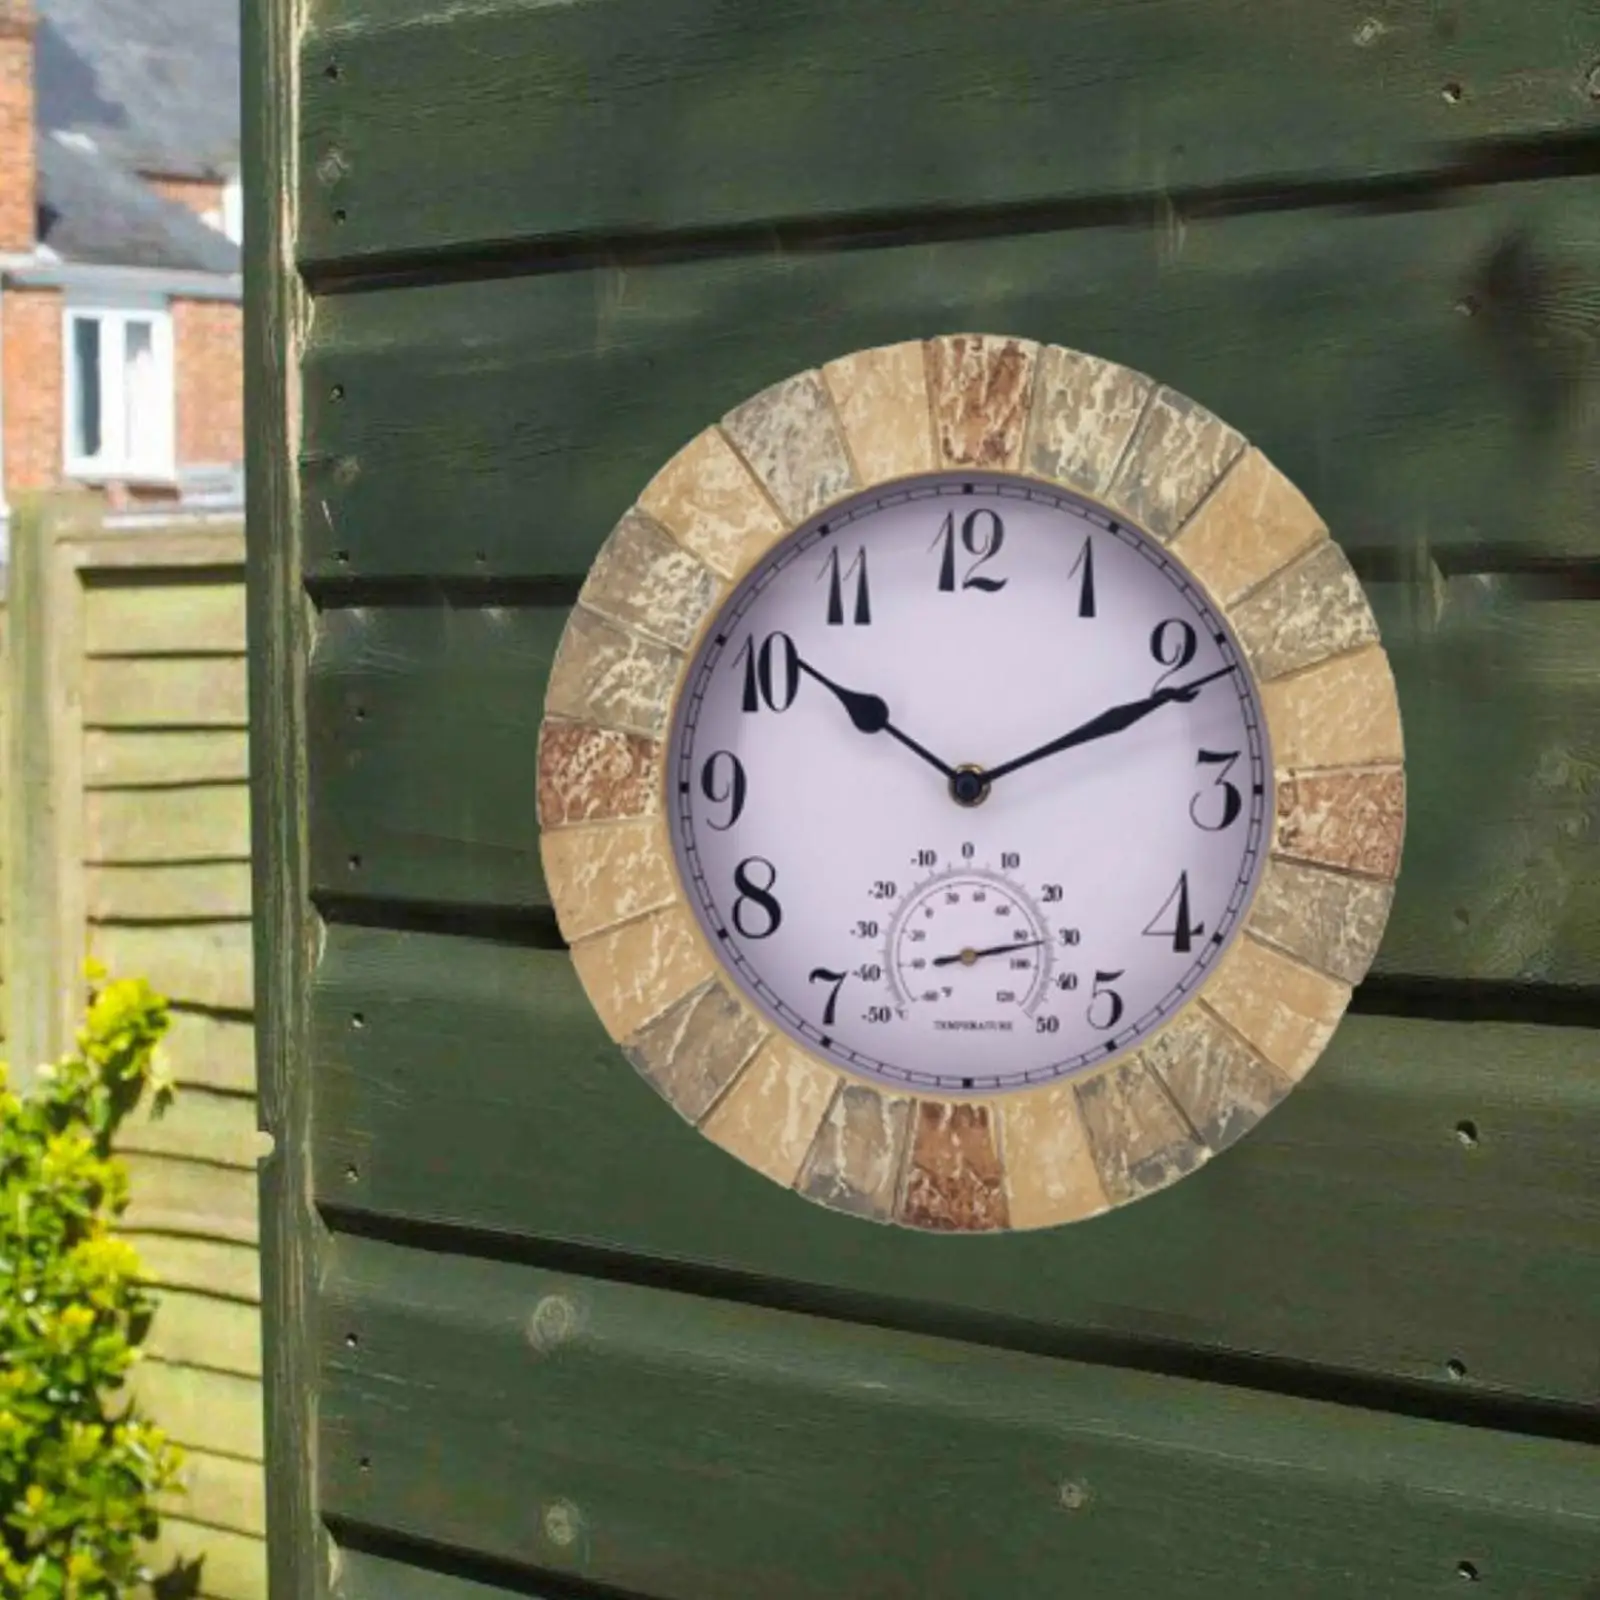 Multipurpose Outdoor Wall Clock Waterproof with Temperature Silent 10inch Clocks for Garden Bedroom Living Room Bathroom